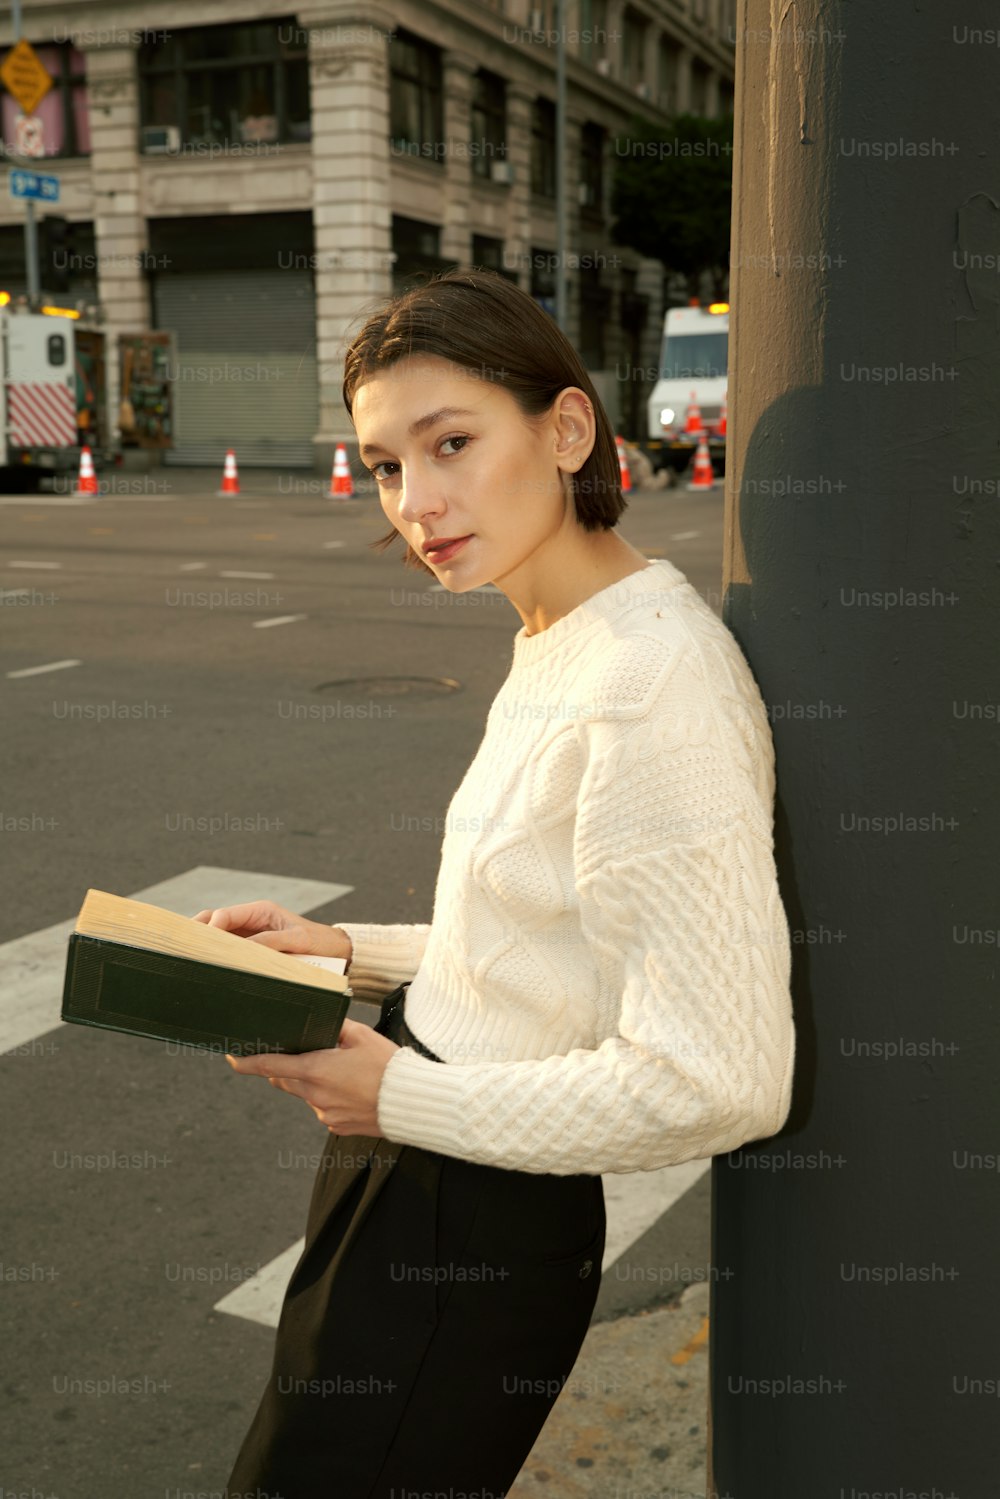 Una mujer apoyada contra un poste mientras sostiene un libro